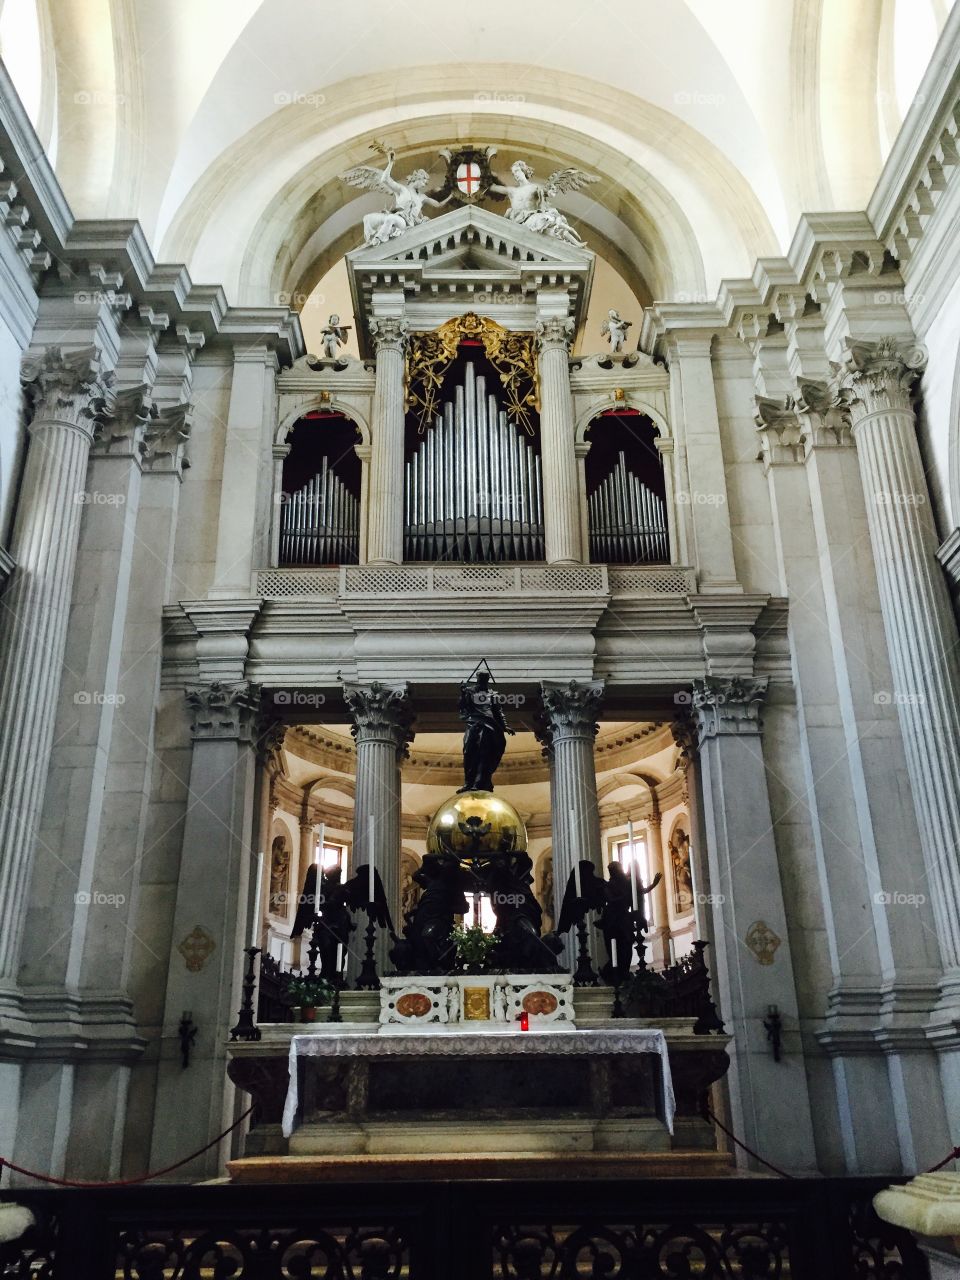 San Giorgio Maggiore - 16th-century Benedictine church on the island of the same name in Venice